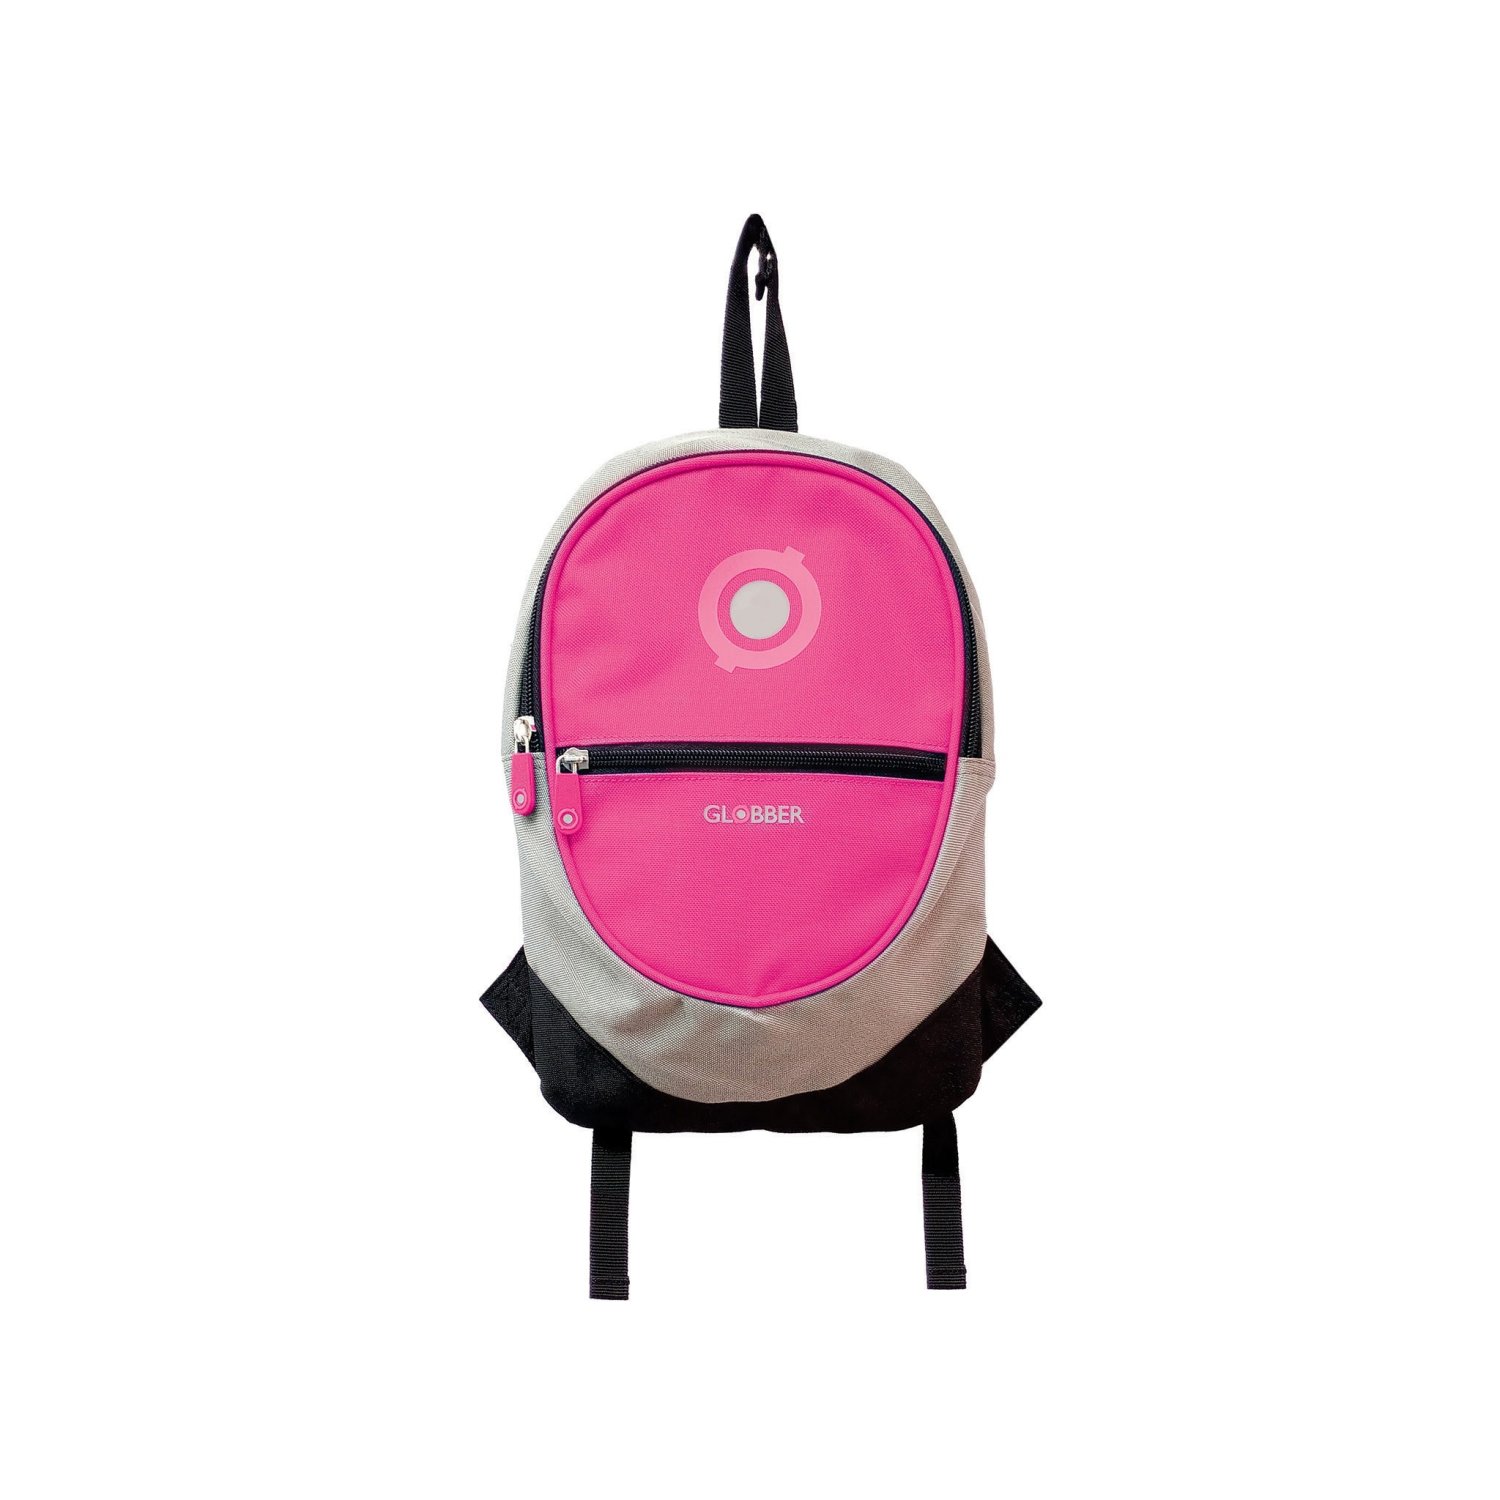 Велорюкзак Globber BACKPACK JUNIOR, детский, розовый, 524-110 велорюкзак globber backpack junior детский зеленый 524 106